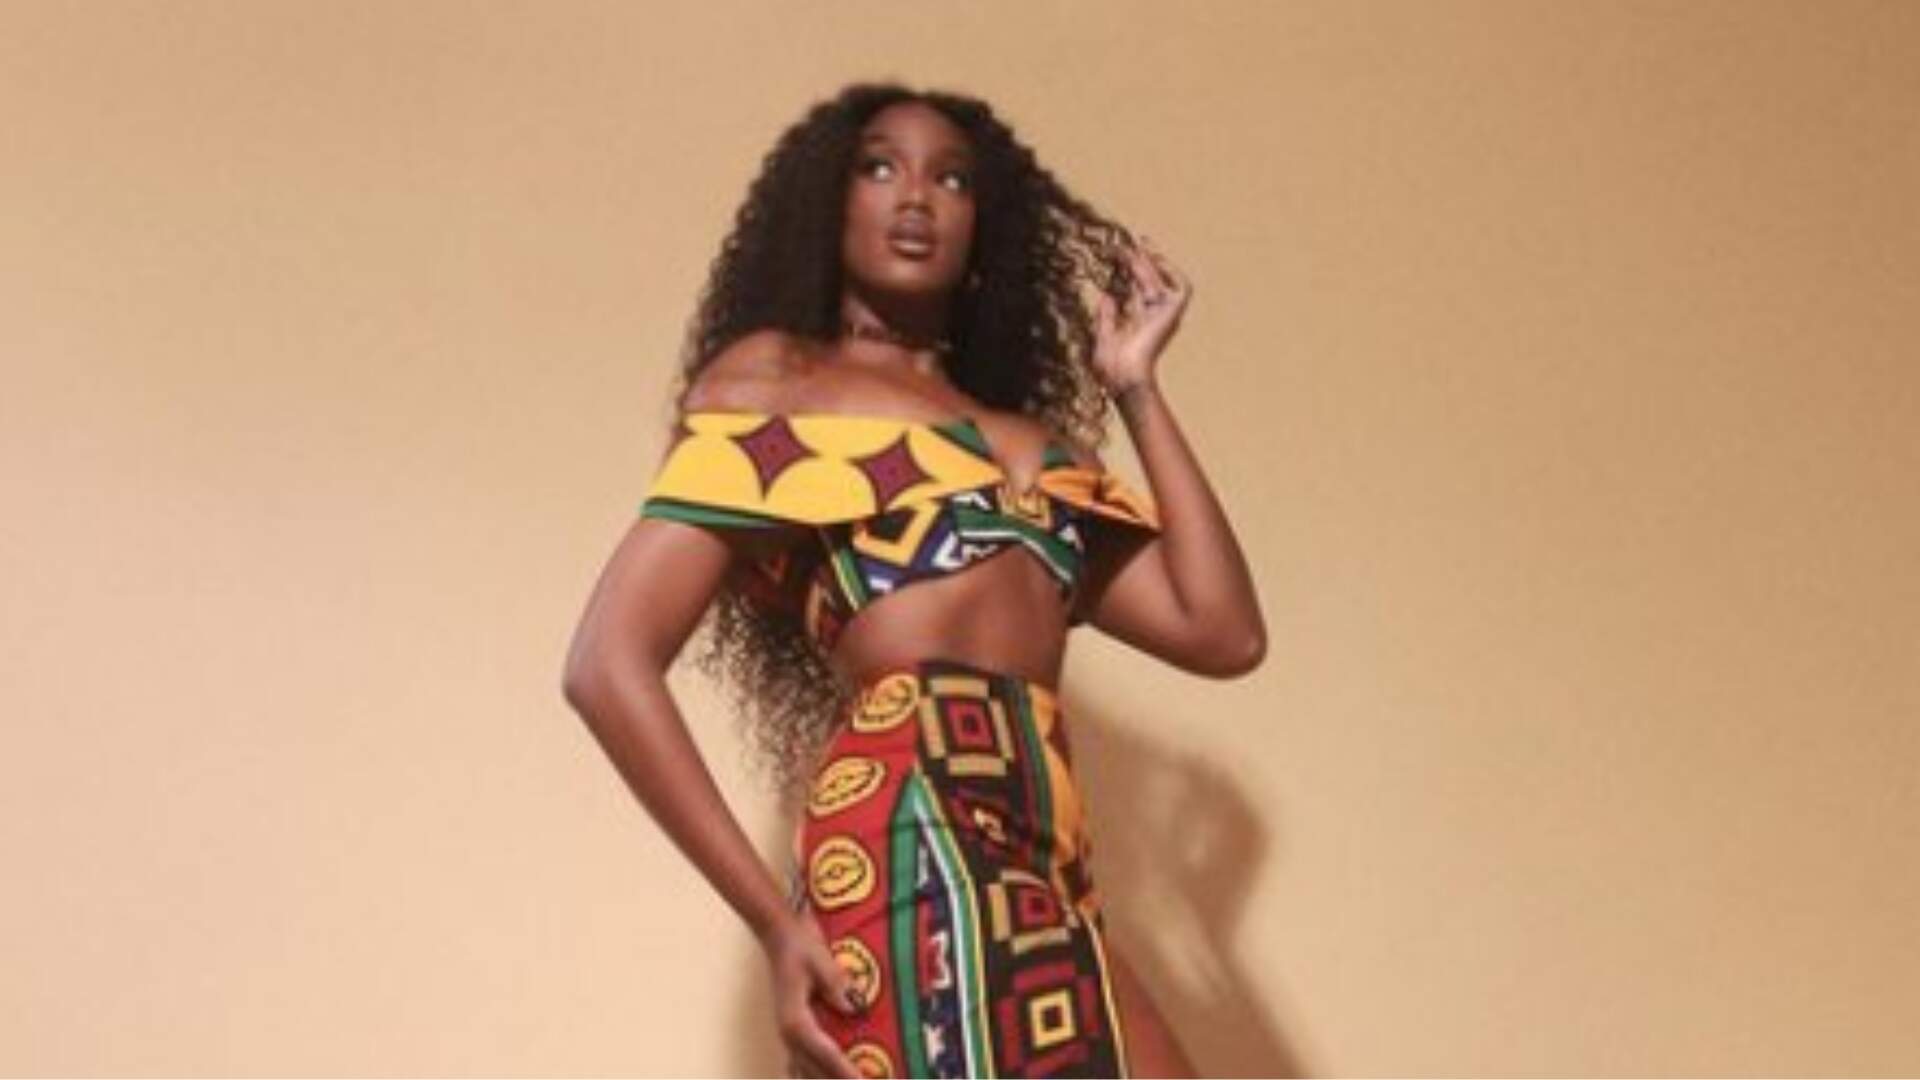 Iza aposta em look poderoso com estampa afro para semifinal do “The Voice Brasil”